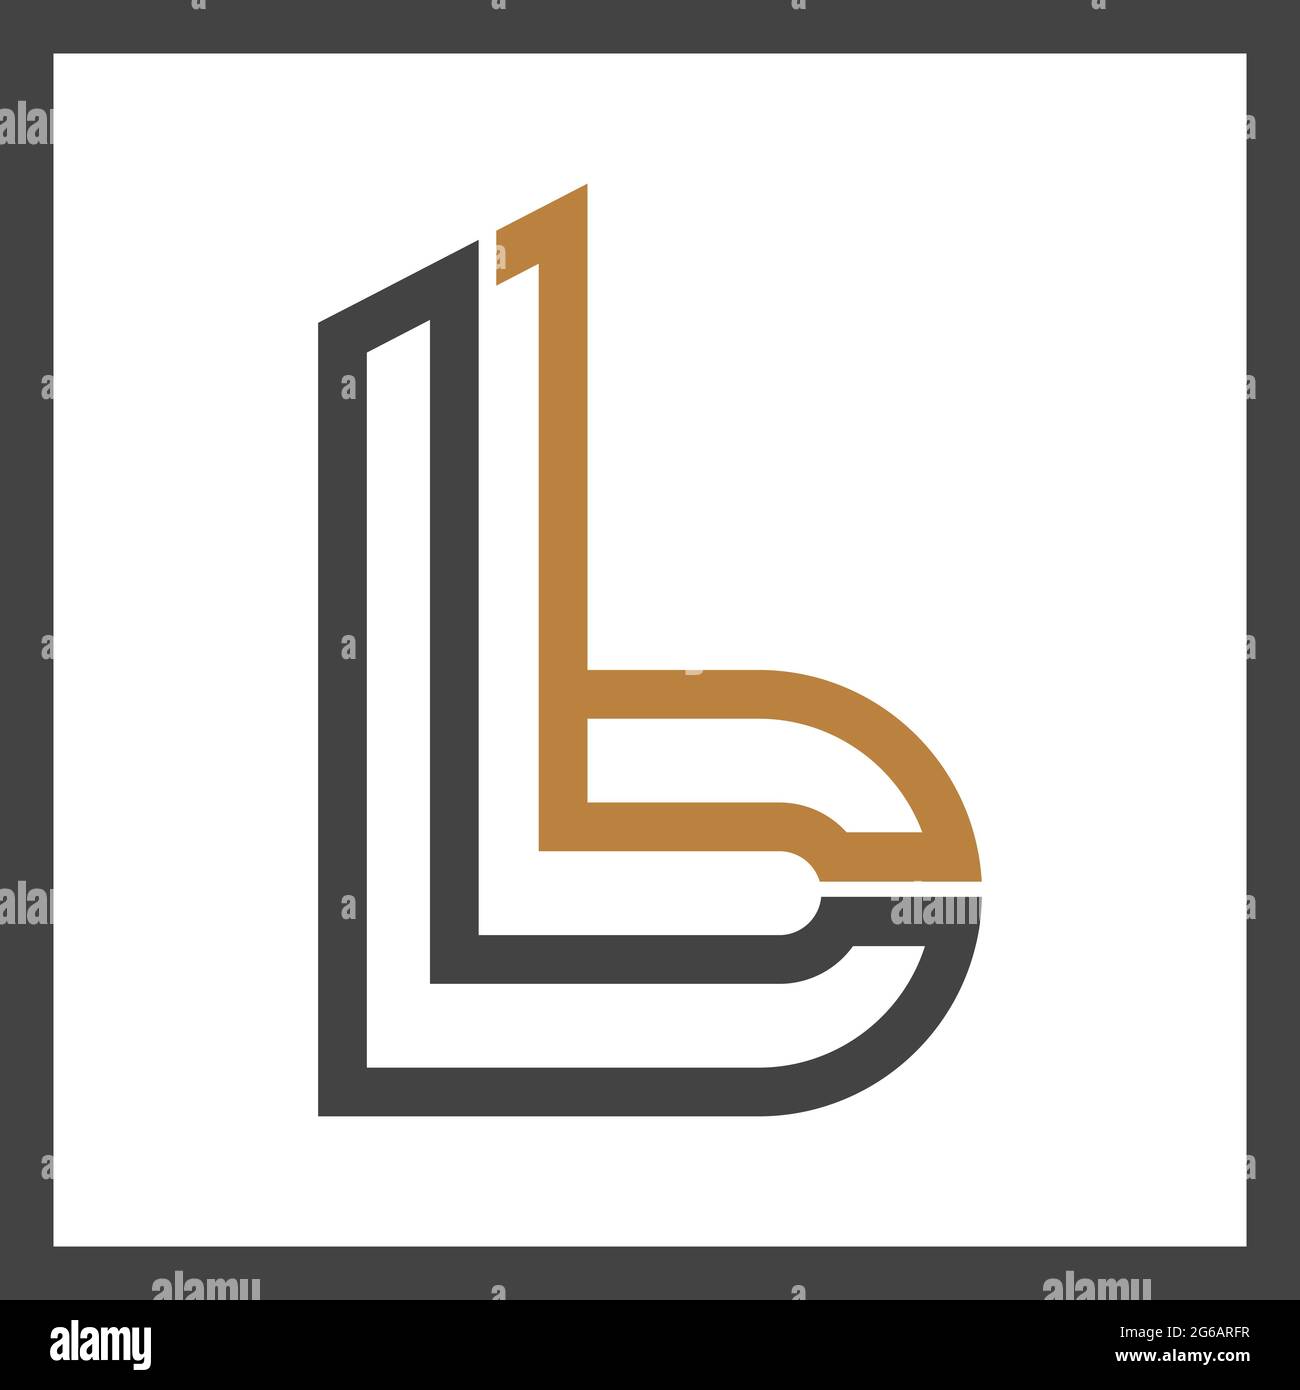 Alphabet Initials logo BL, LB, B and L Stock Vector